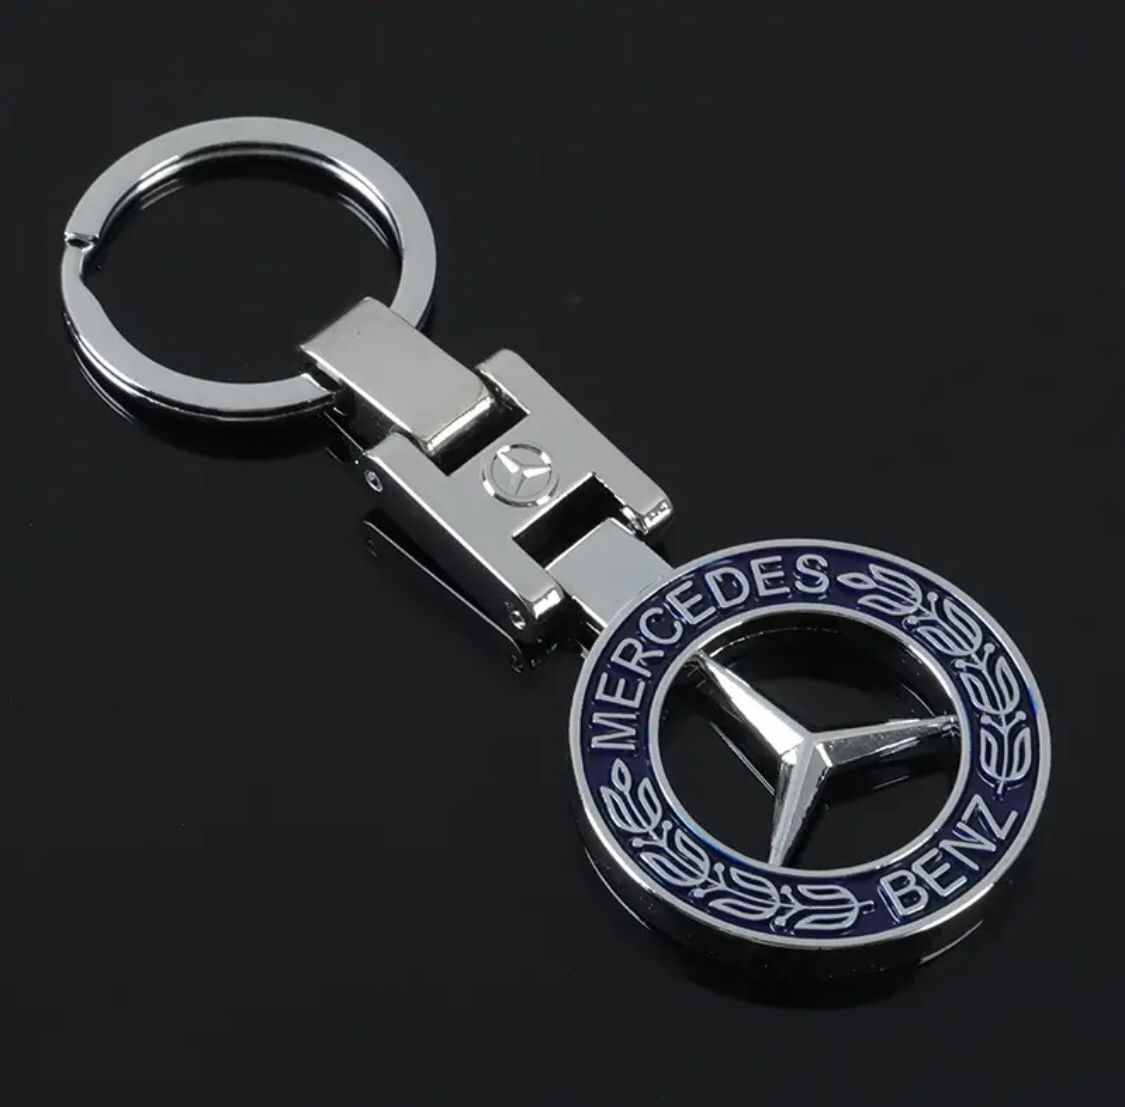 Llavero Mercedes Benz